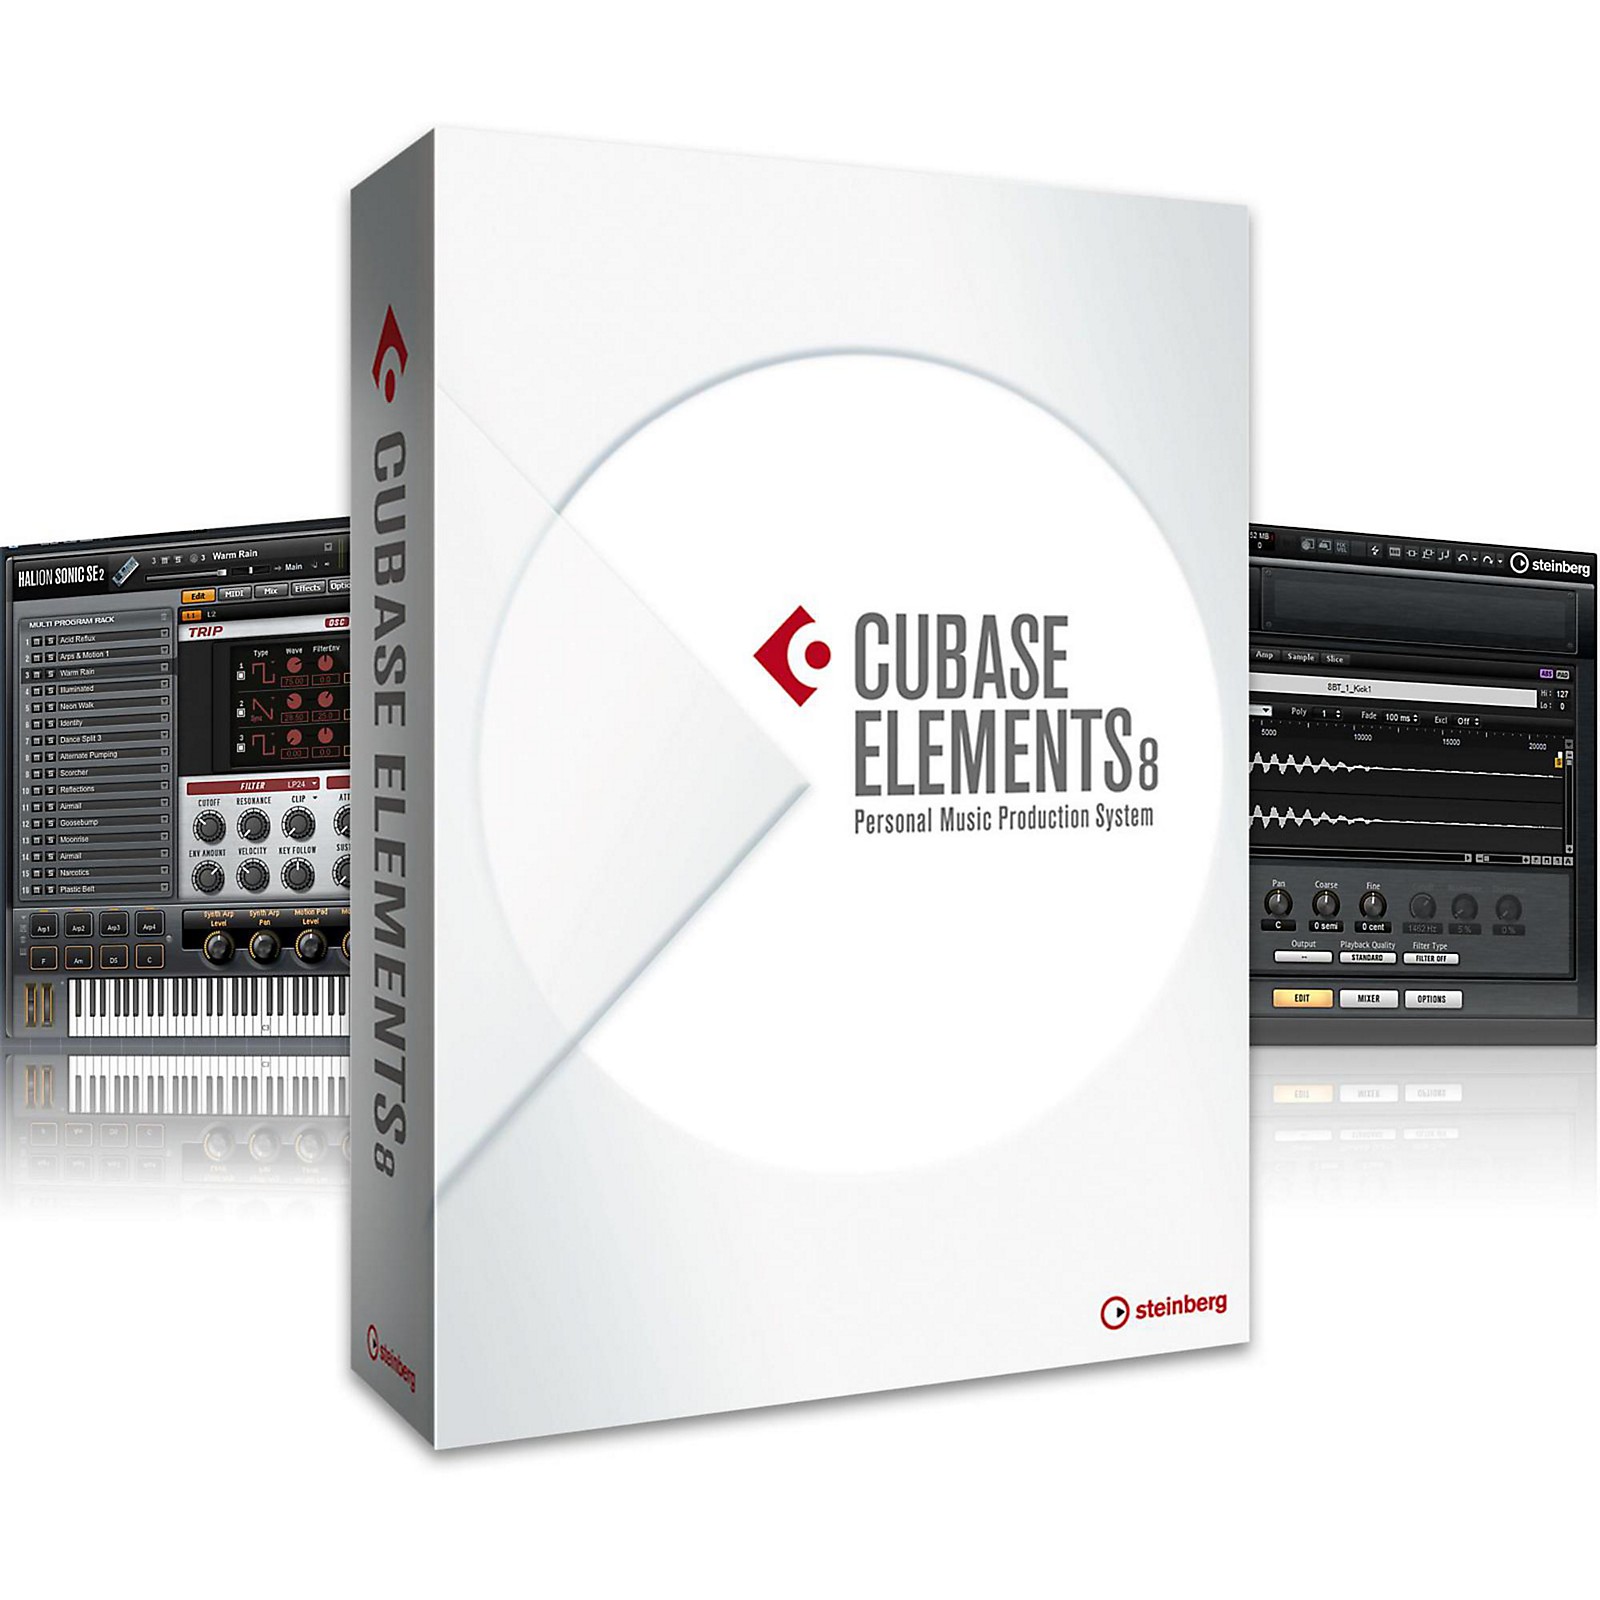 cubase elements 8 download